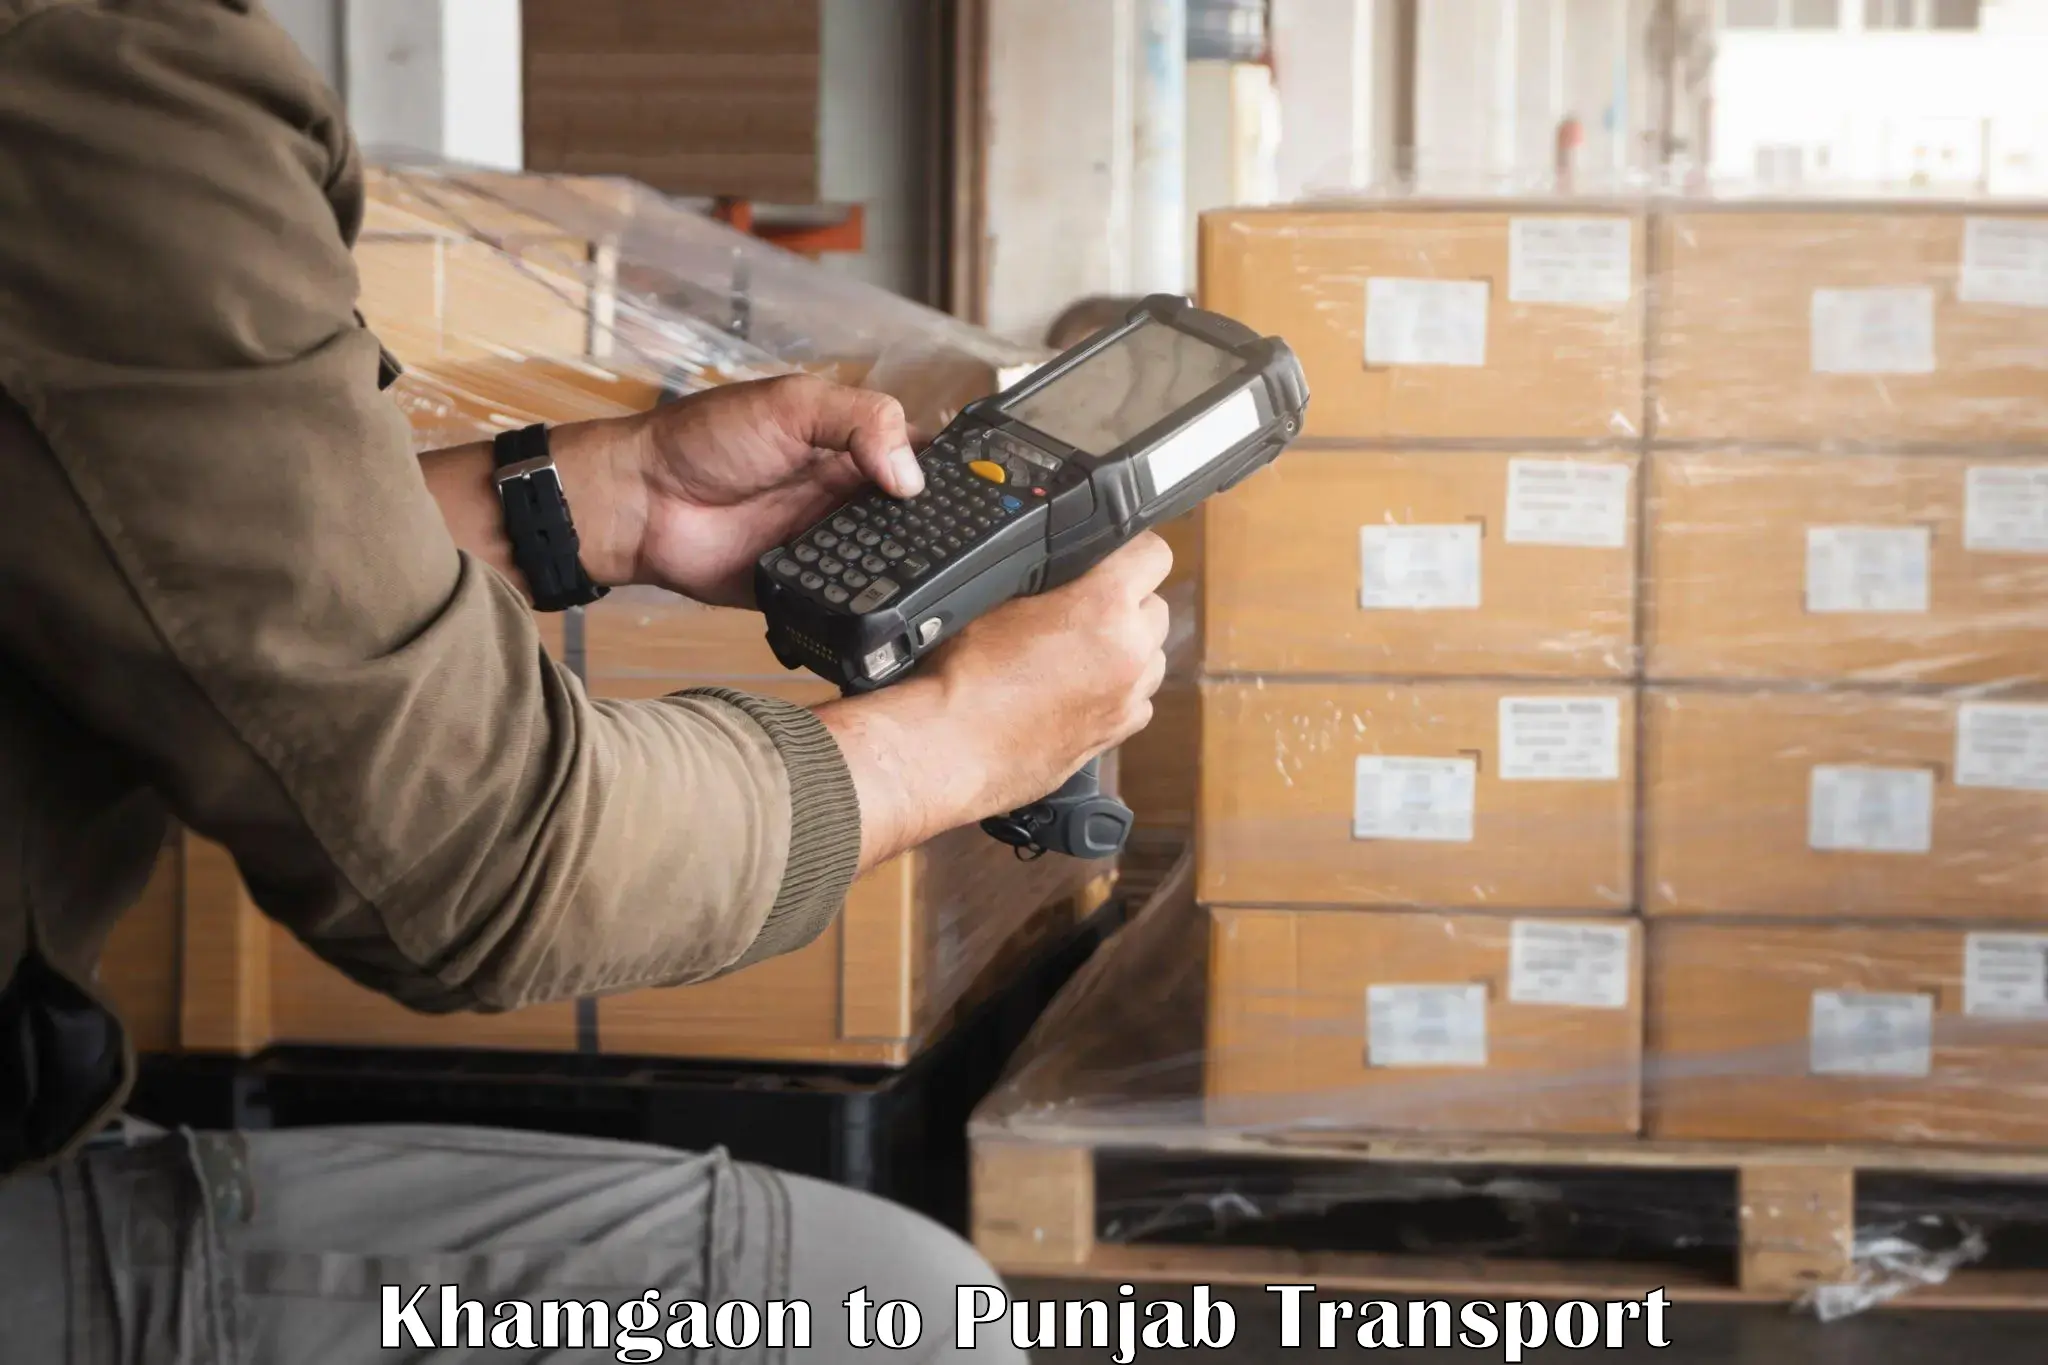 Daily transport service Khamgaon to Punjab